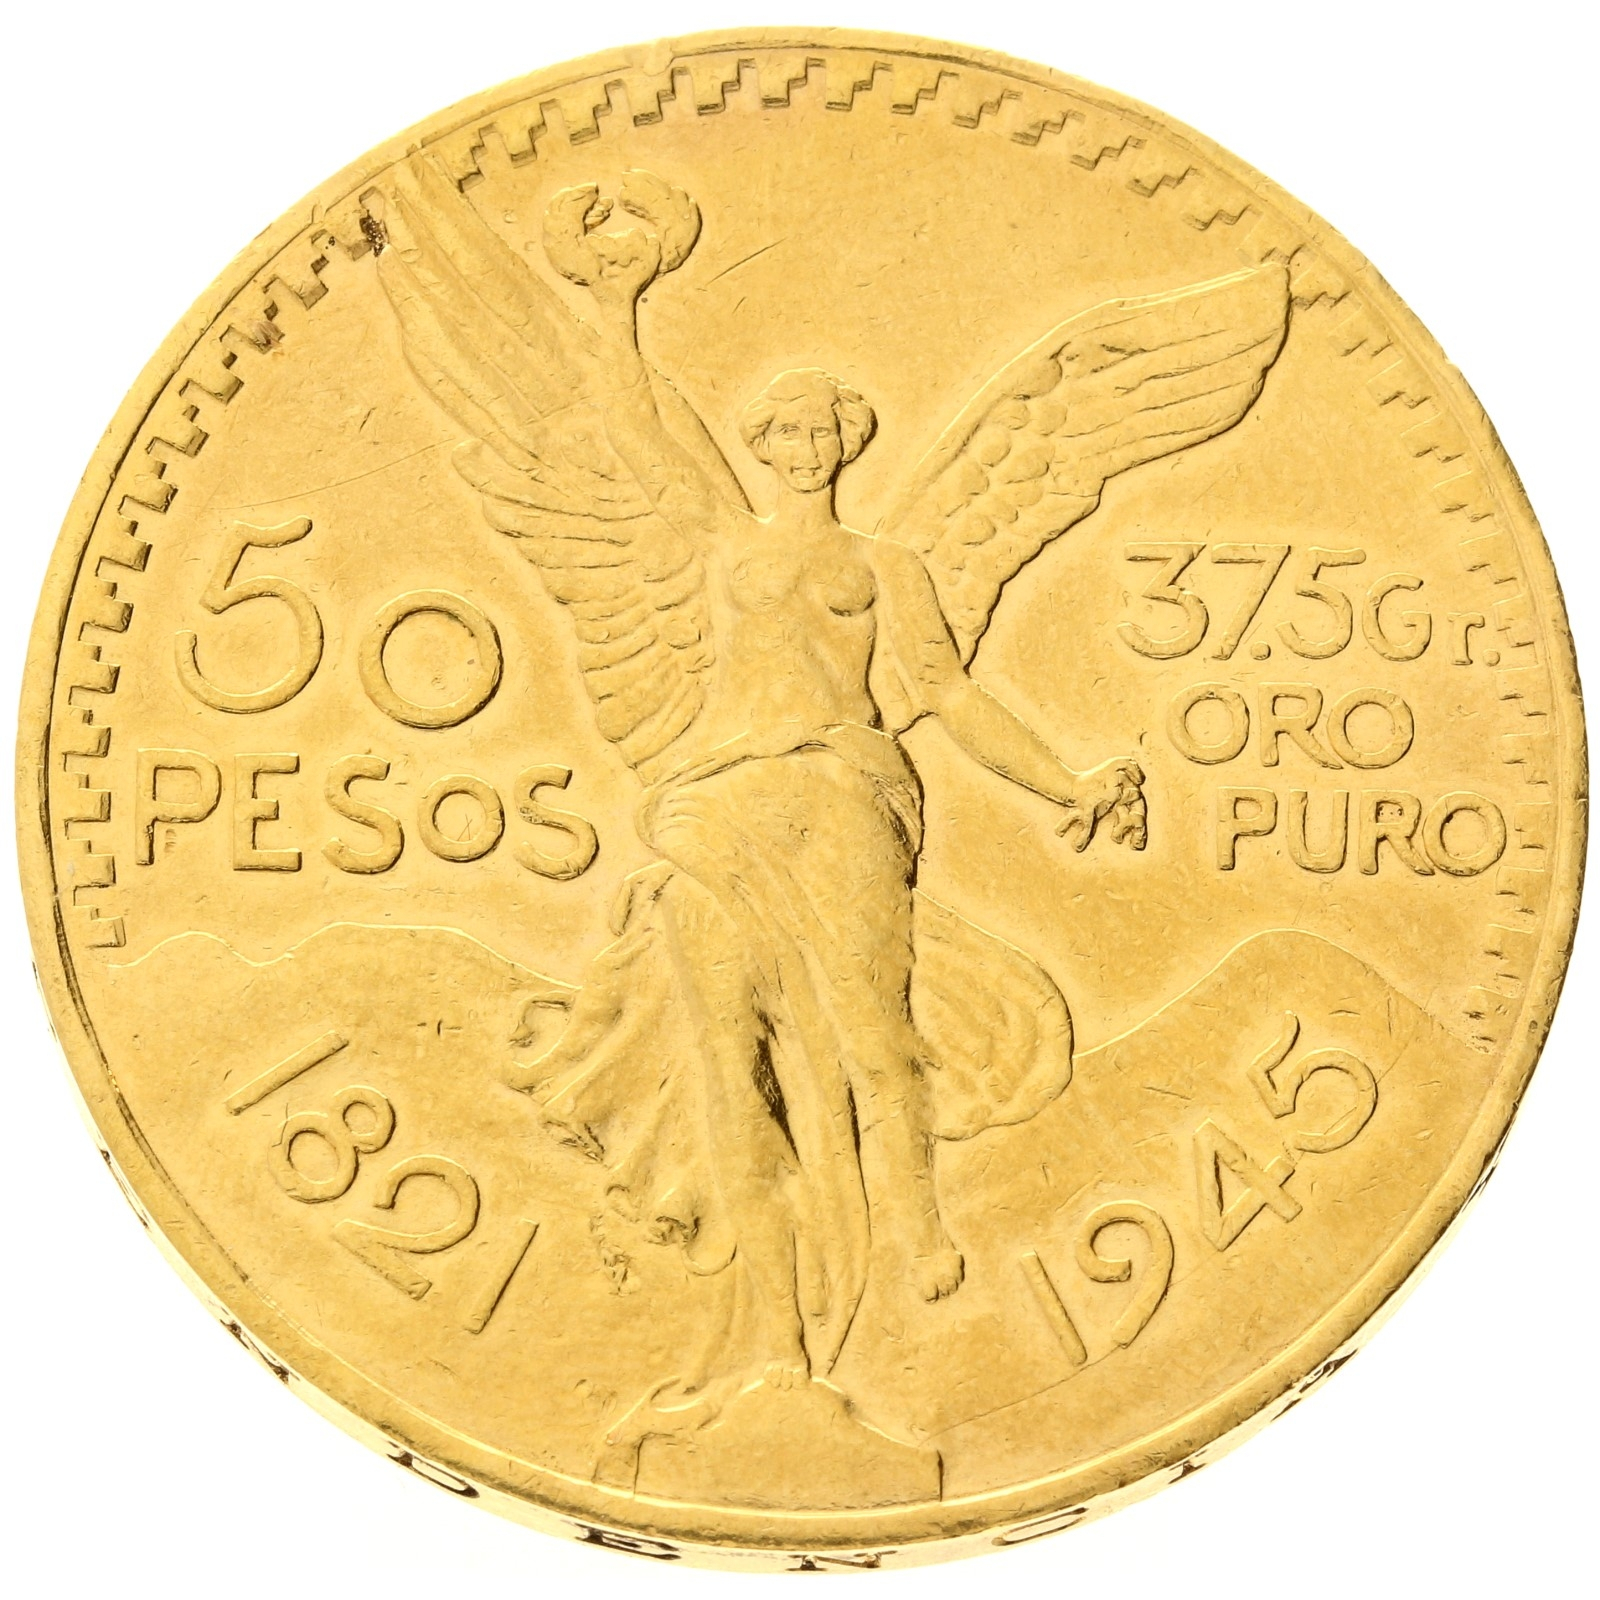 Mexico - 50 pesos - 1945 - Centenario